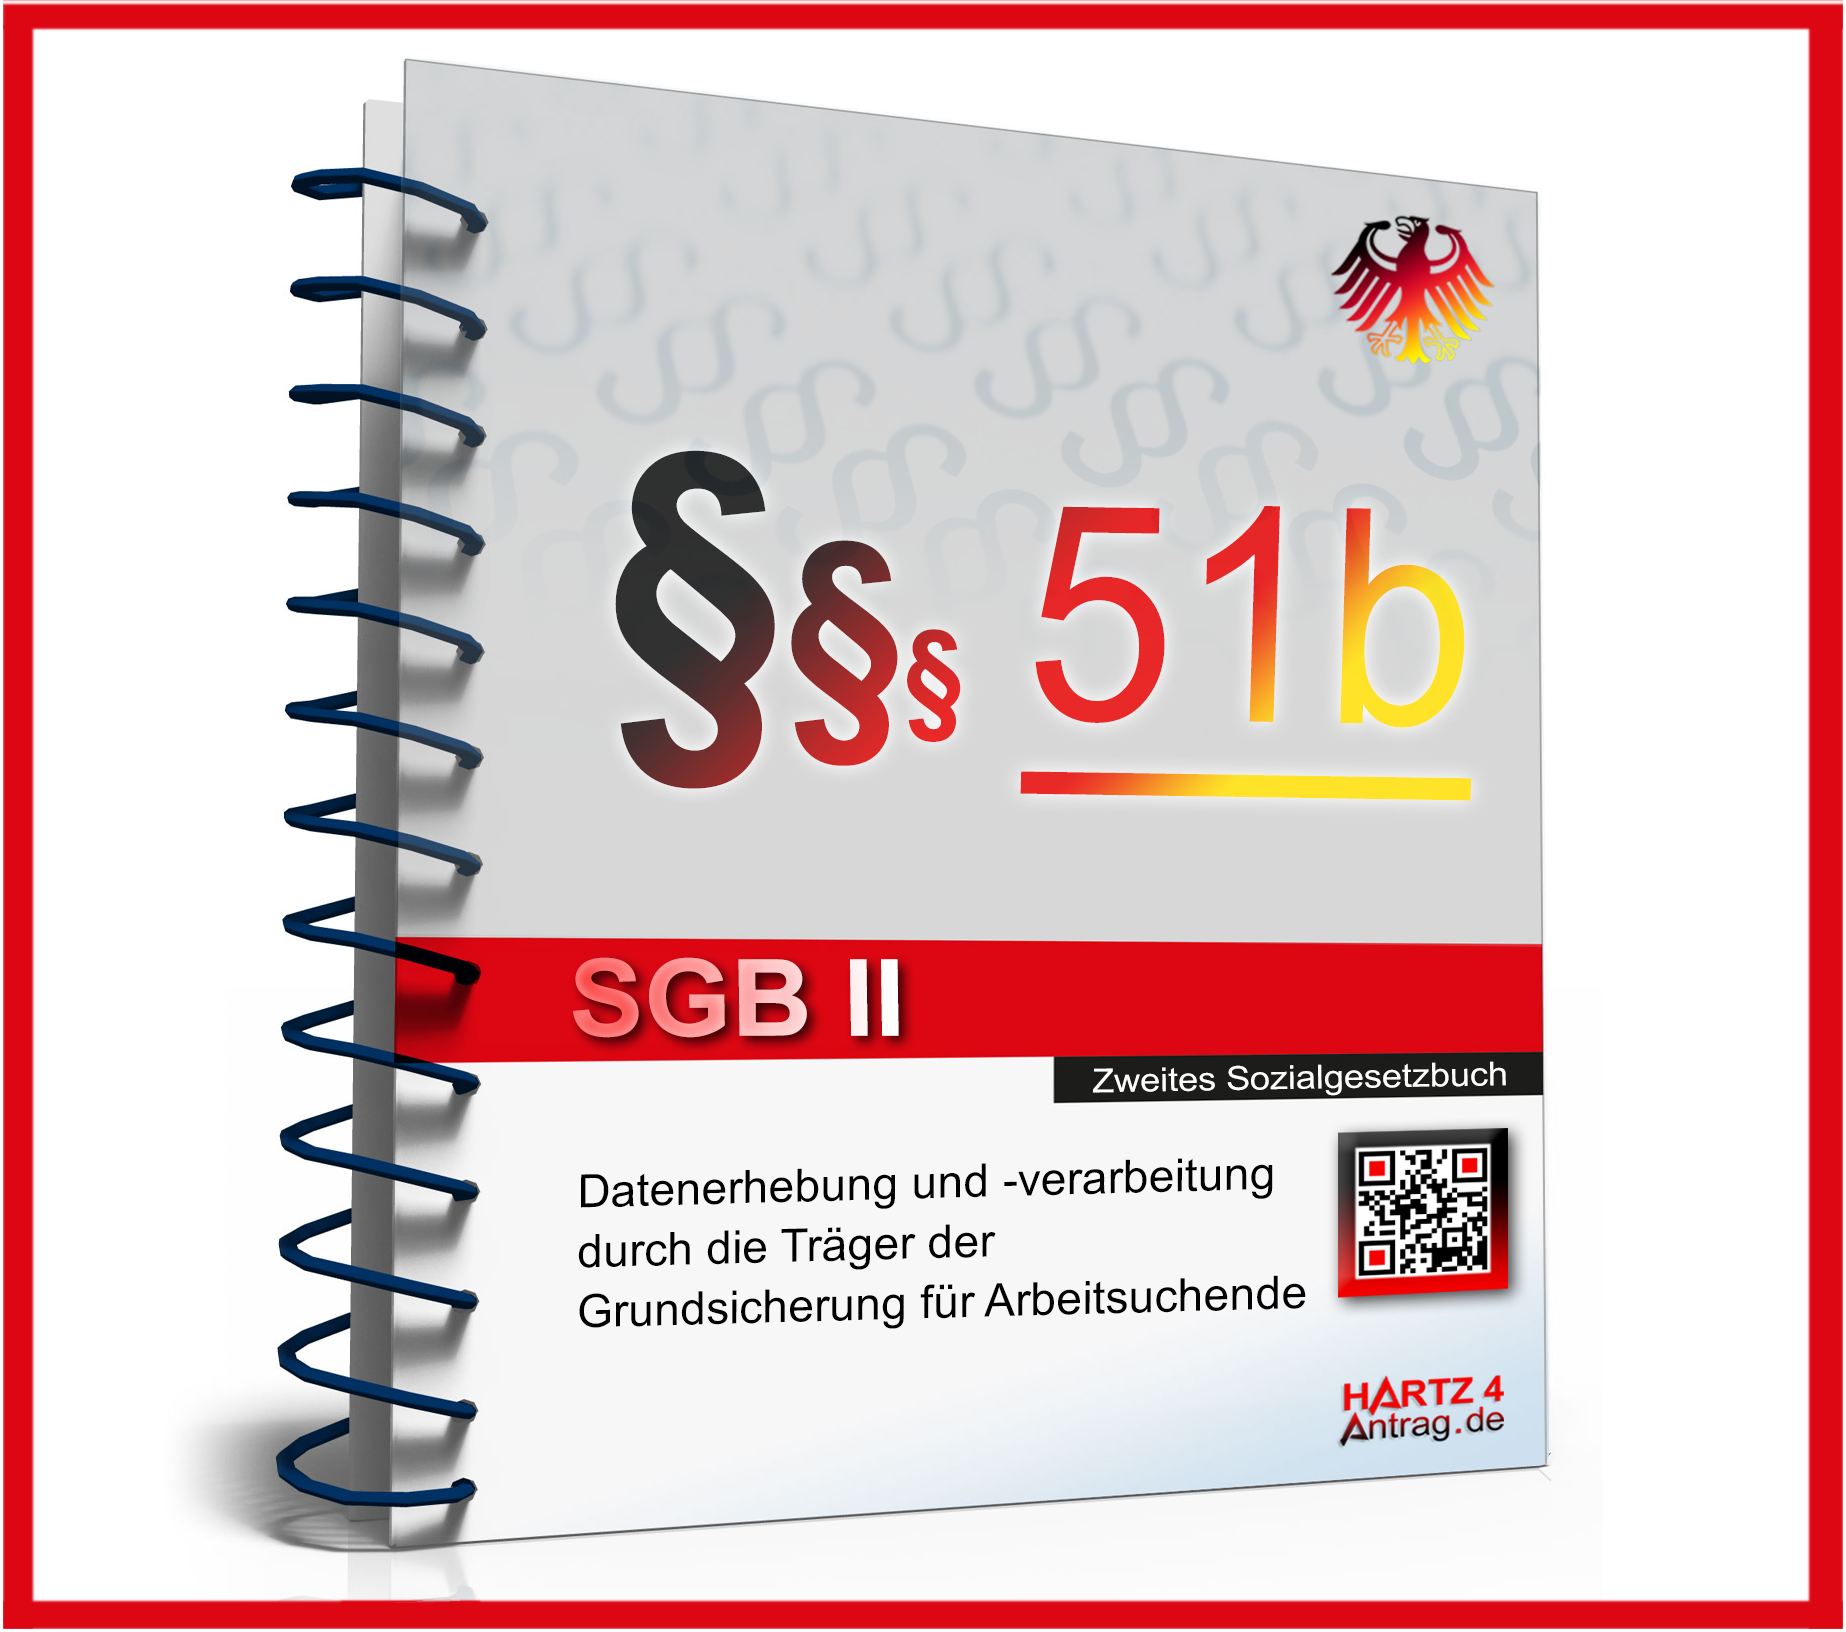 § 51b SGB II